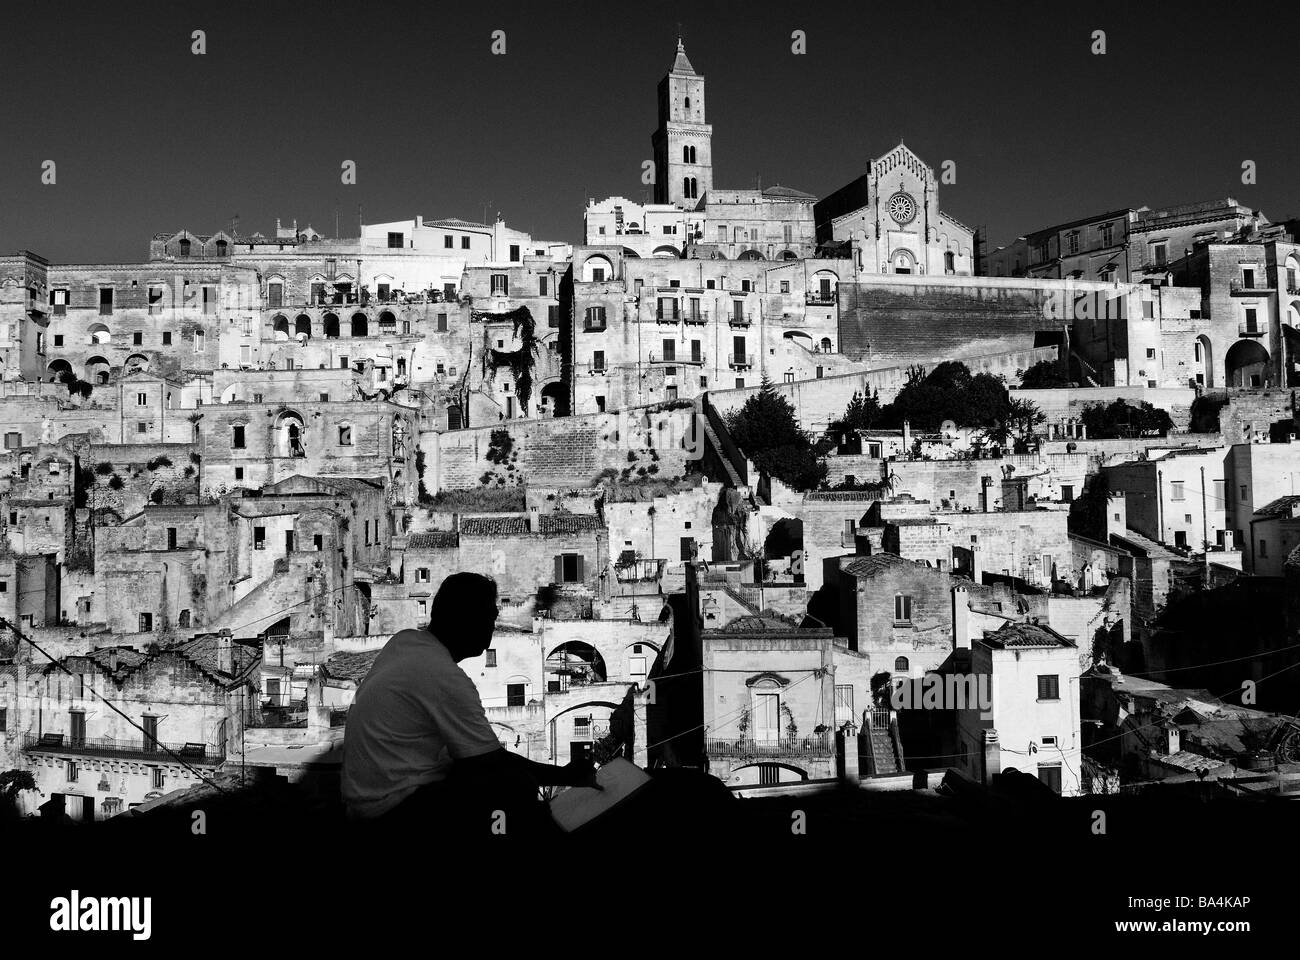 Italia. La Basilicata. Matera. 2008 Foto de stock